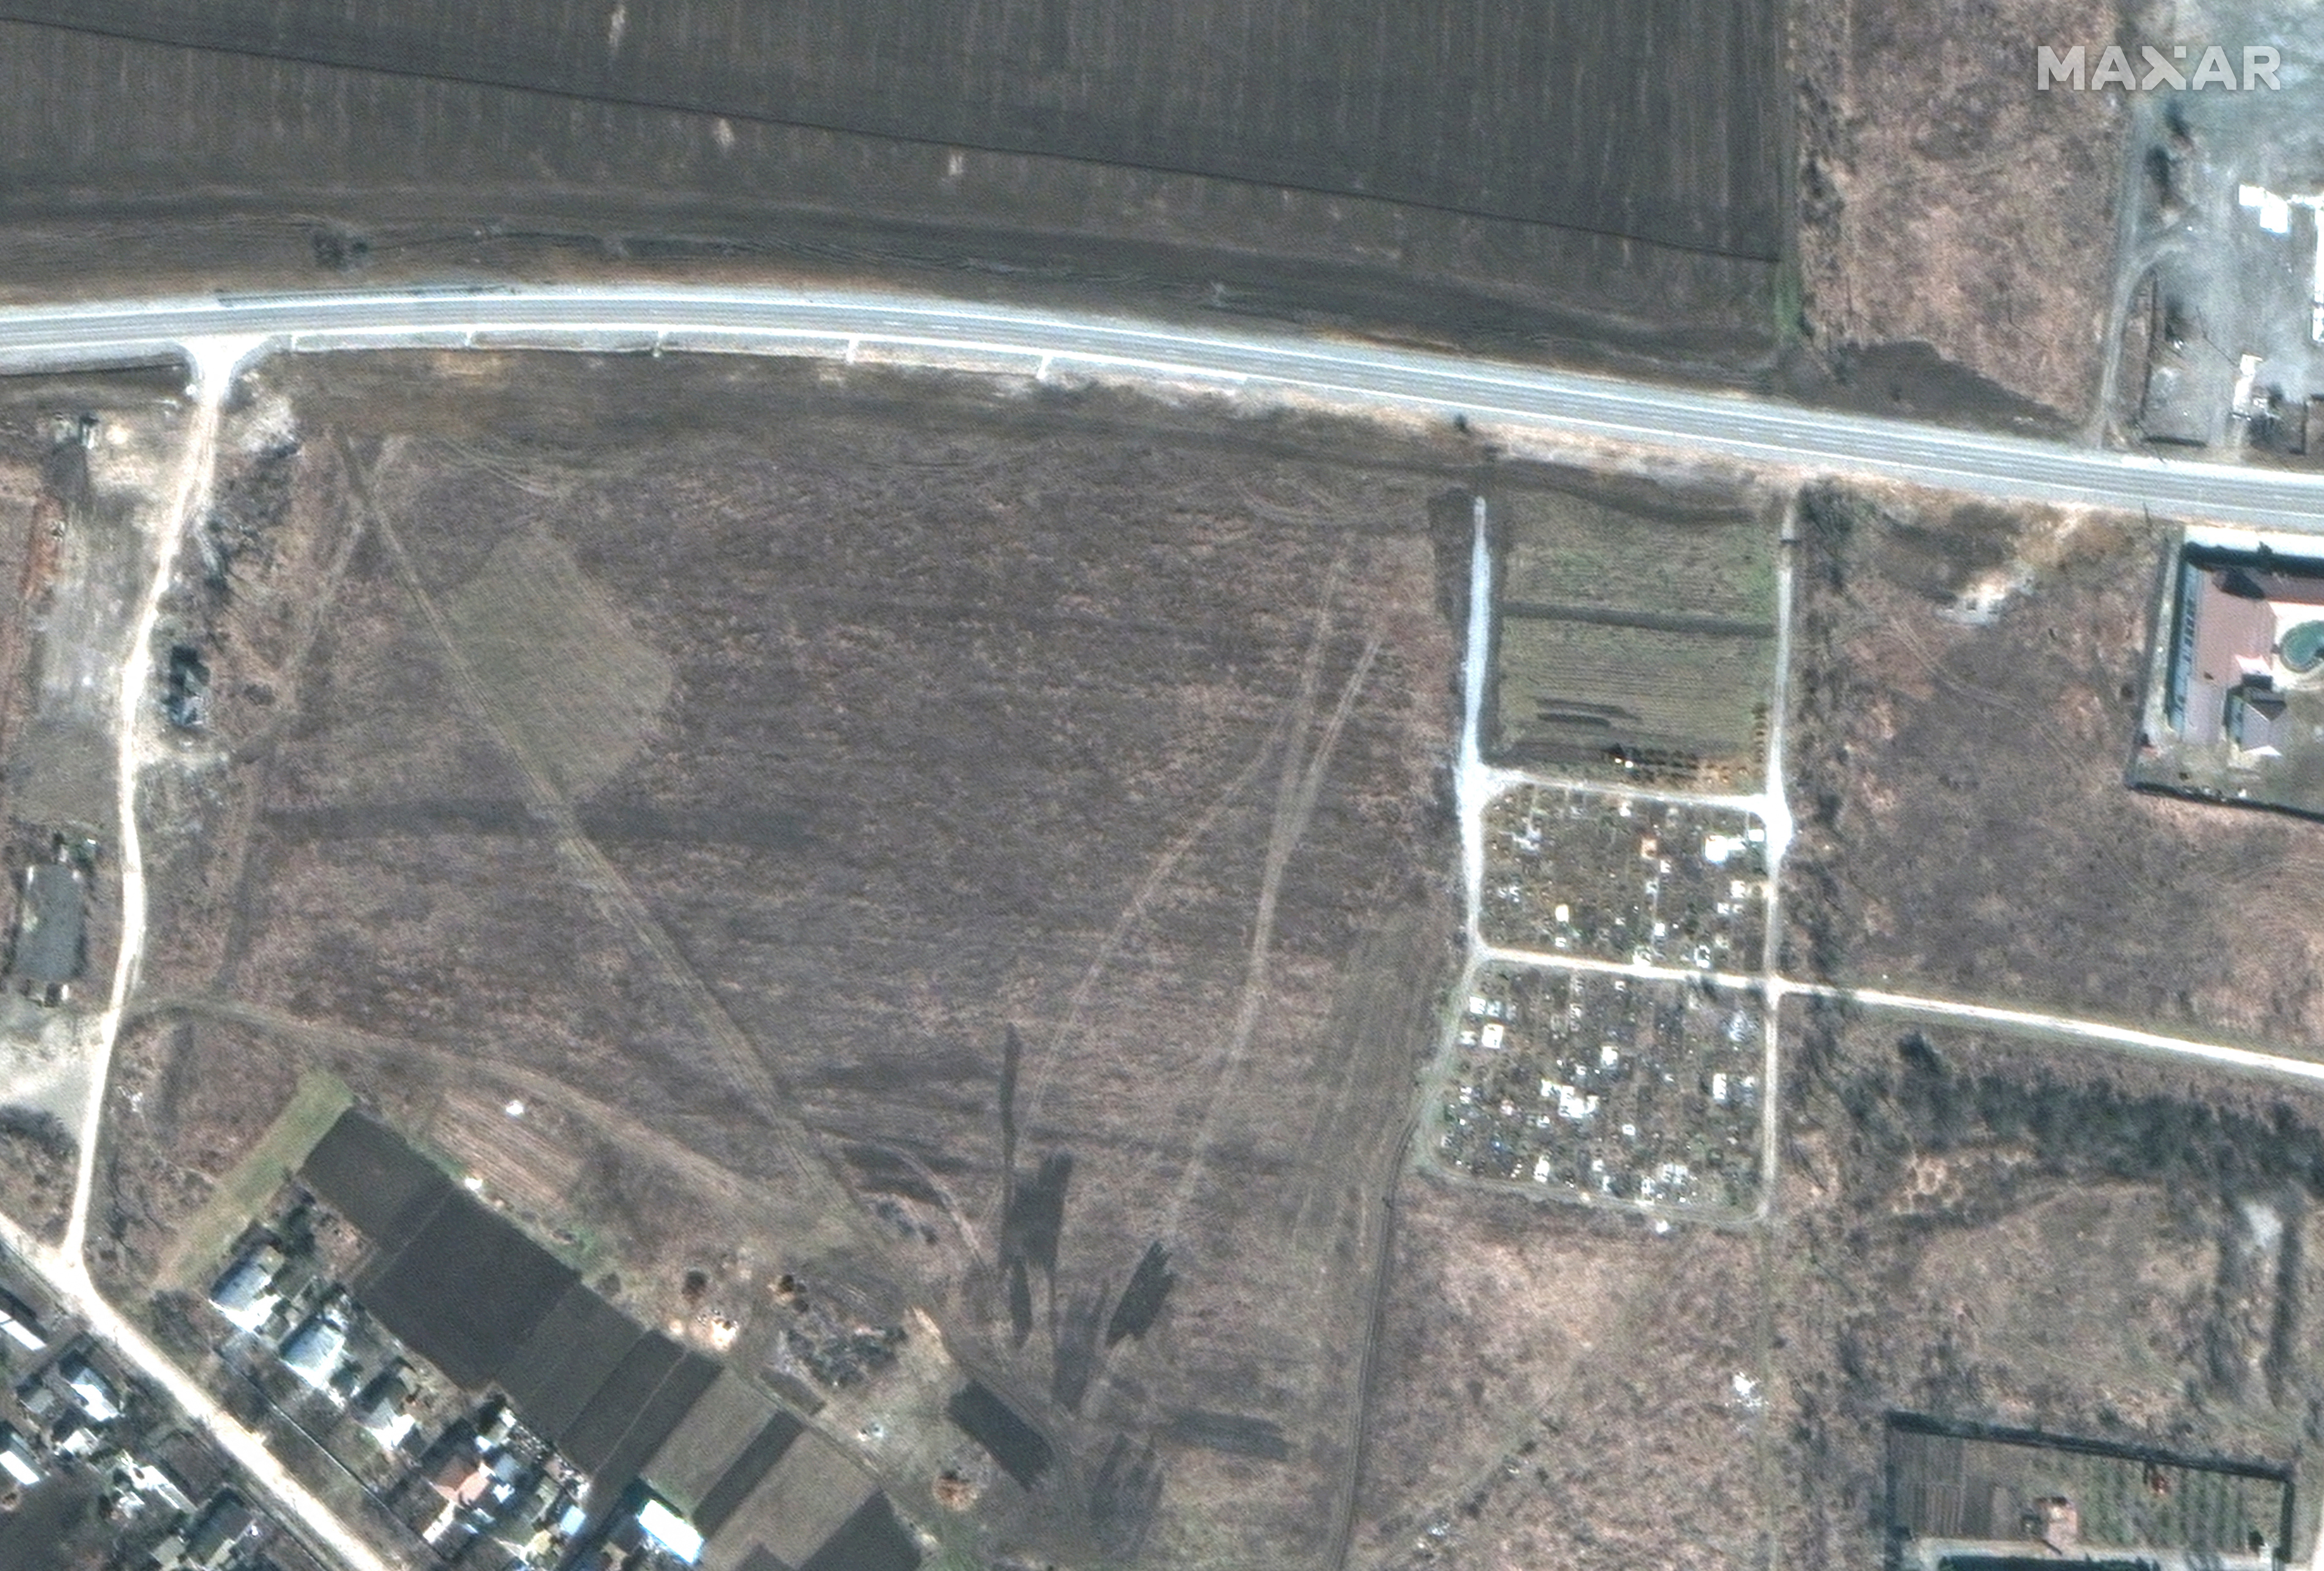 Az ugyanitt március 19-én rögzített műholdfelvételen még nem látszanak az új sírhantok, ez arra utal, hogy itt, a Mariupoltól húsz kilométernyire lévő faluban is tömeggyilkosságokat követtek el az orosz megszállók.